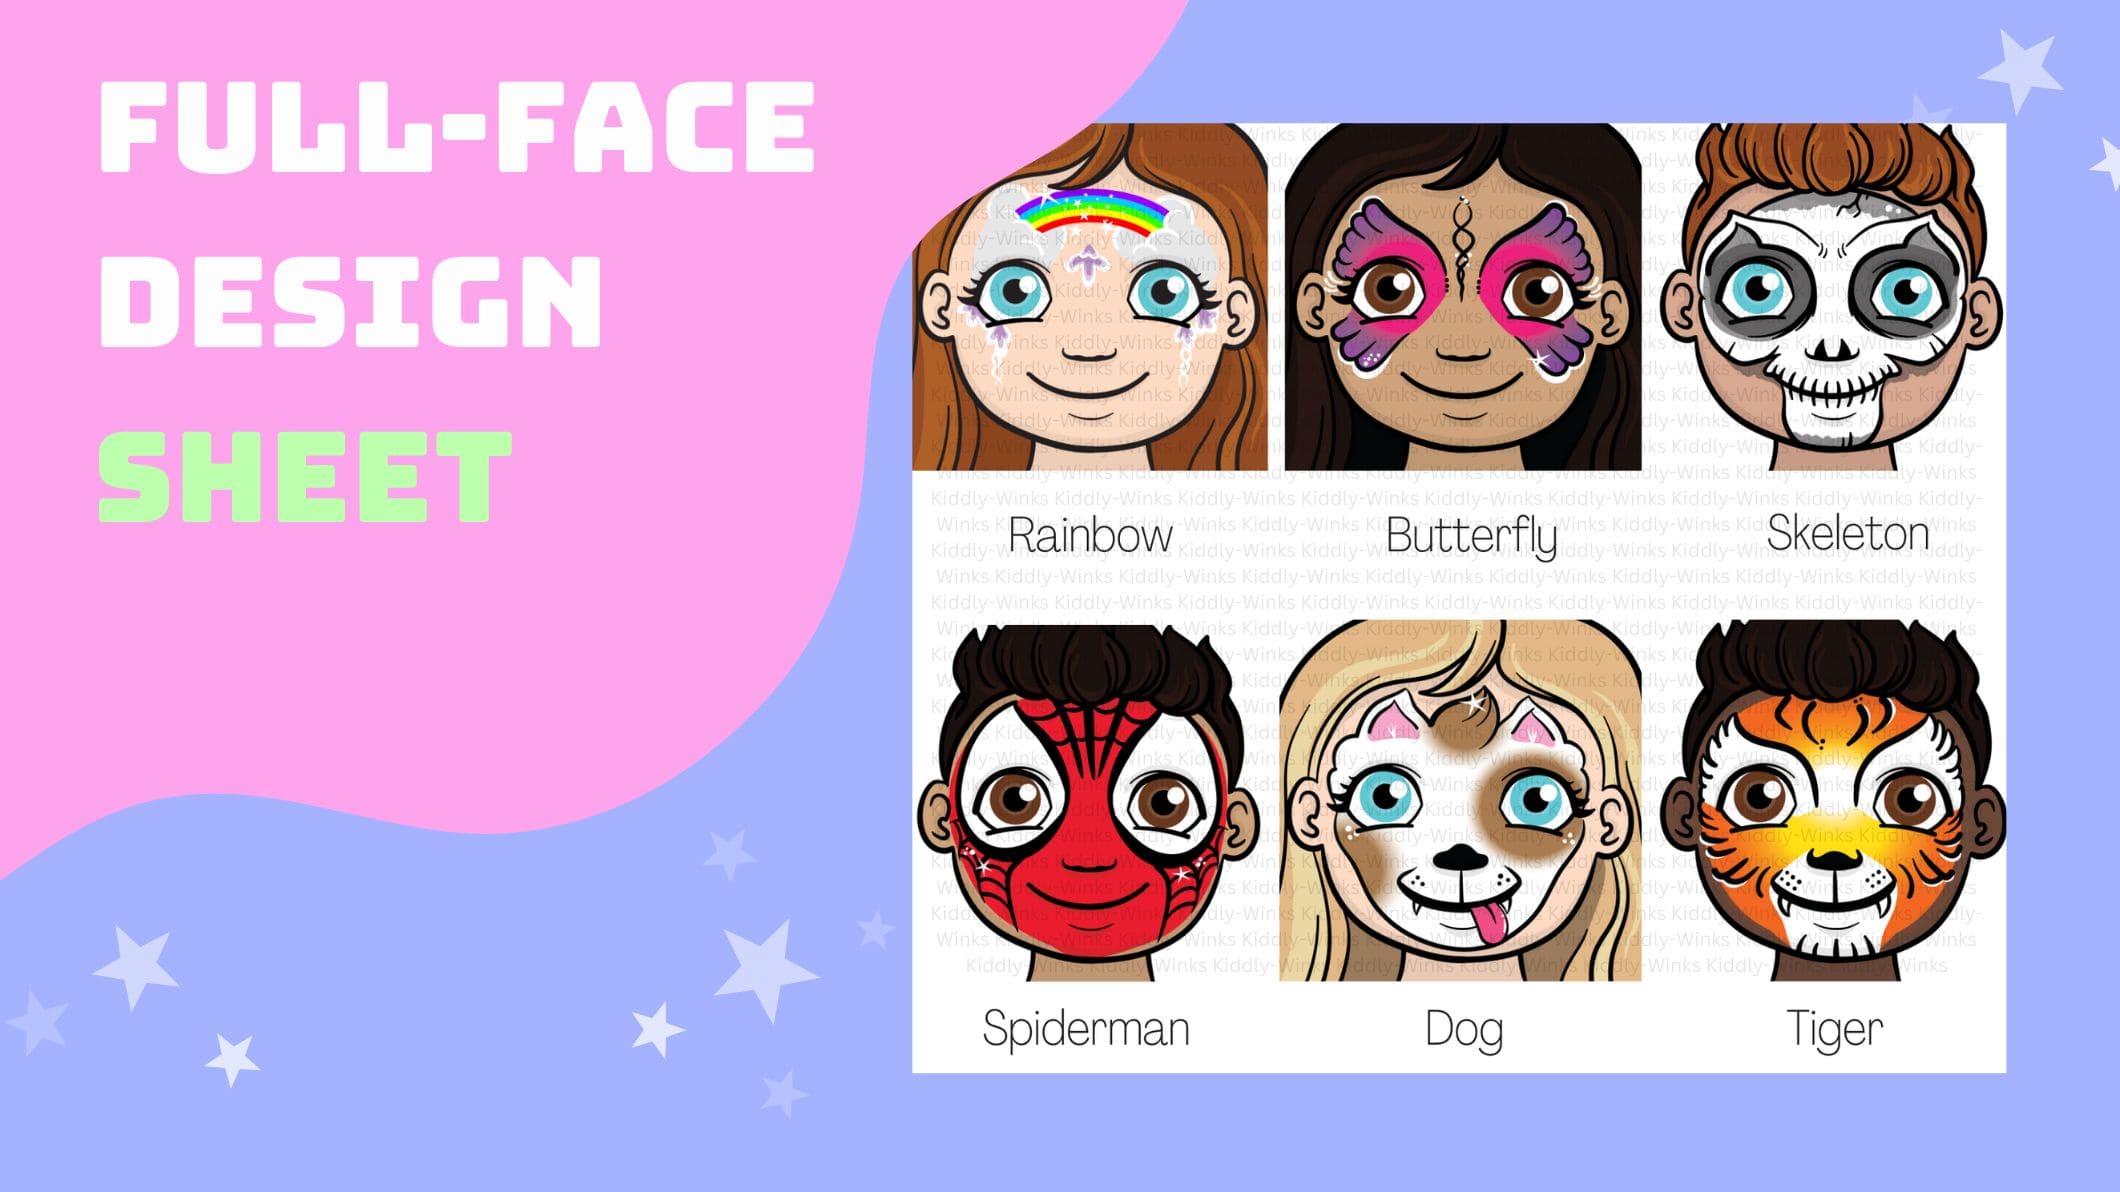 Full Face Design Sheet for preschoolers